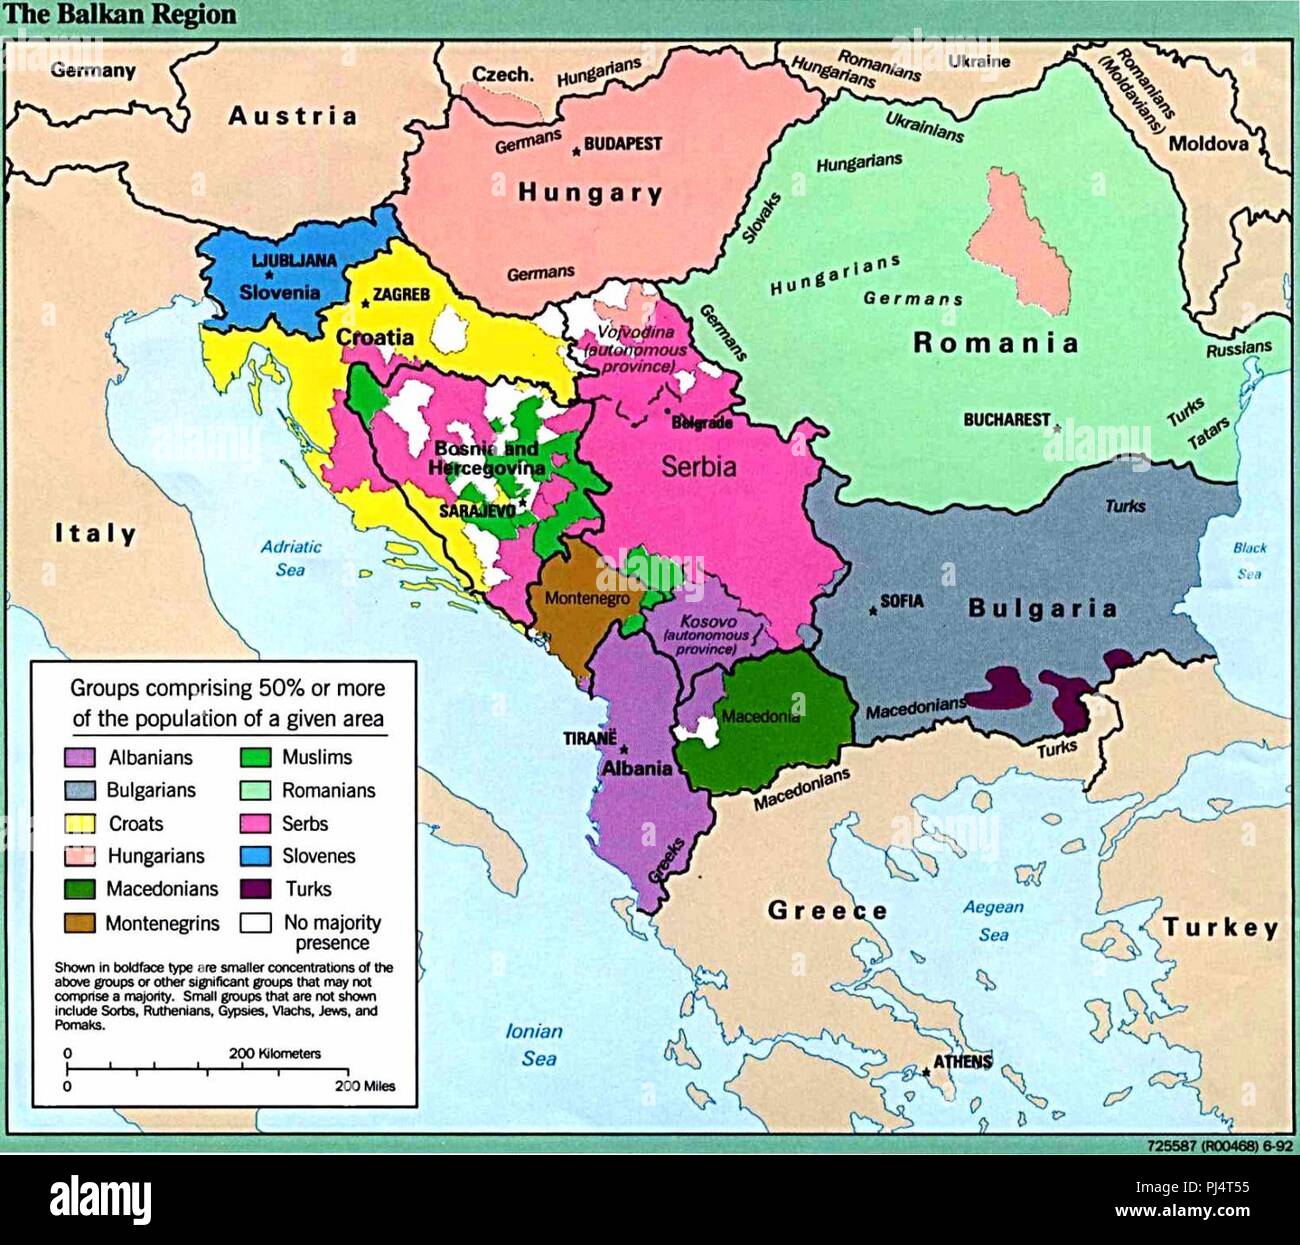 Mapa Etnico De Los Balcanes 1992 Pj4t55 